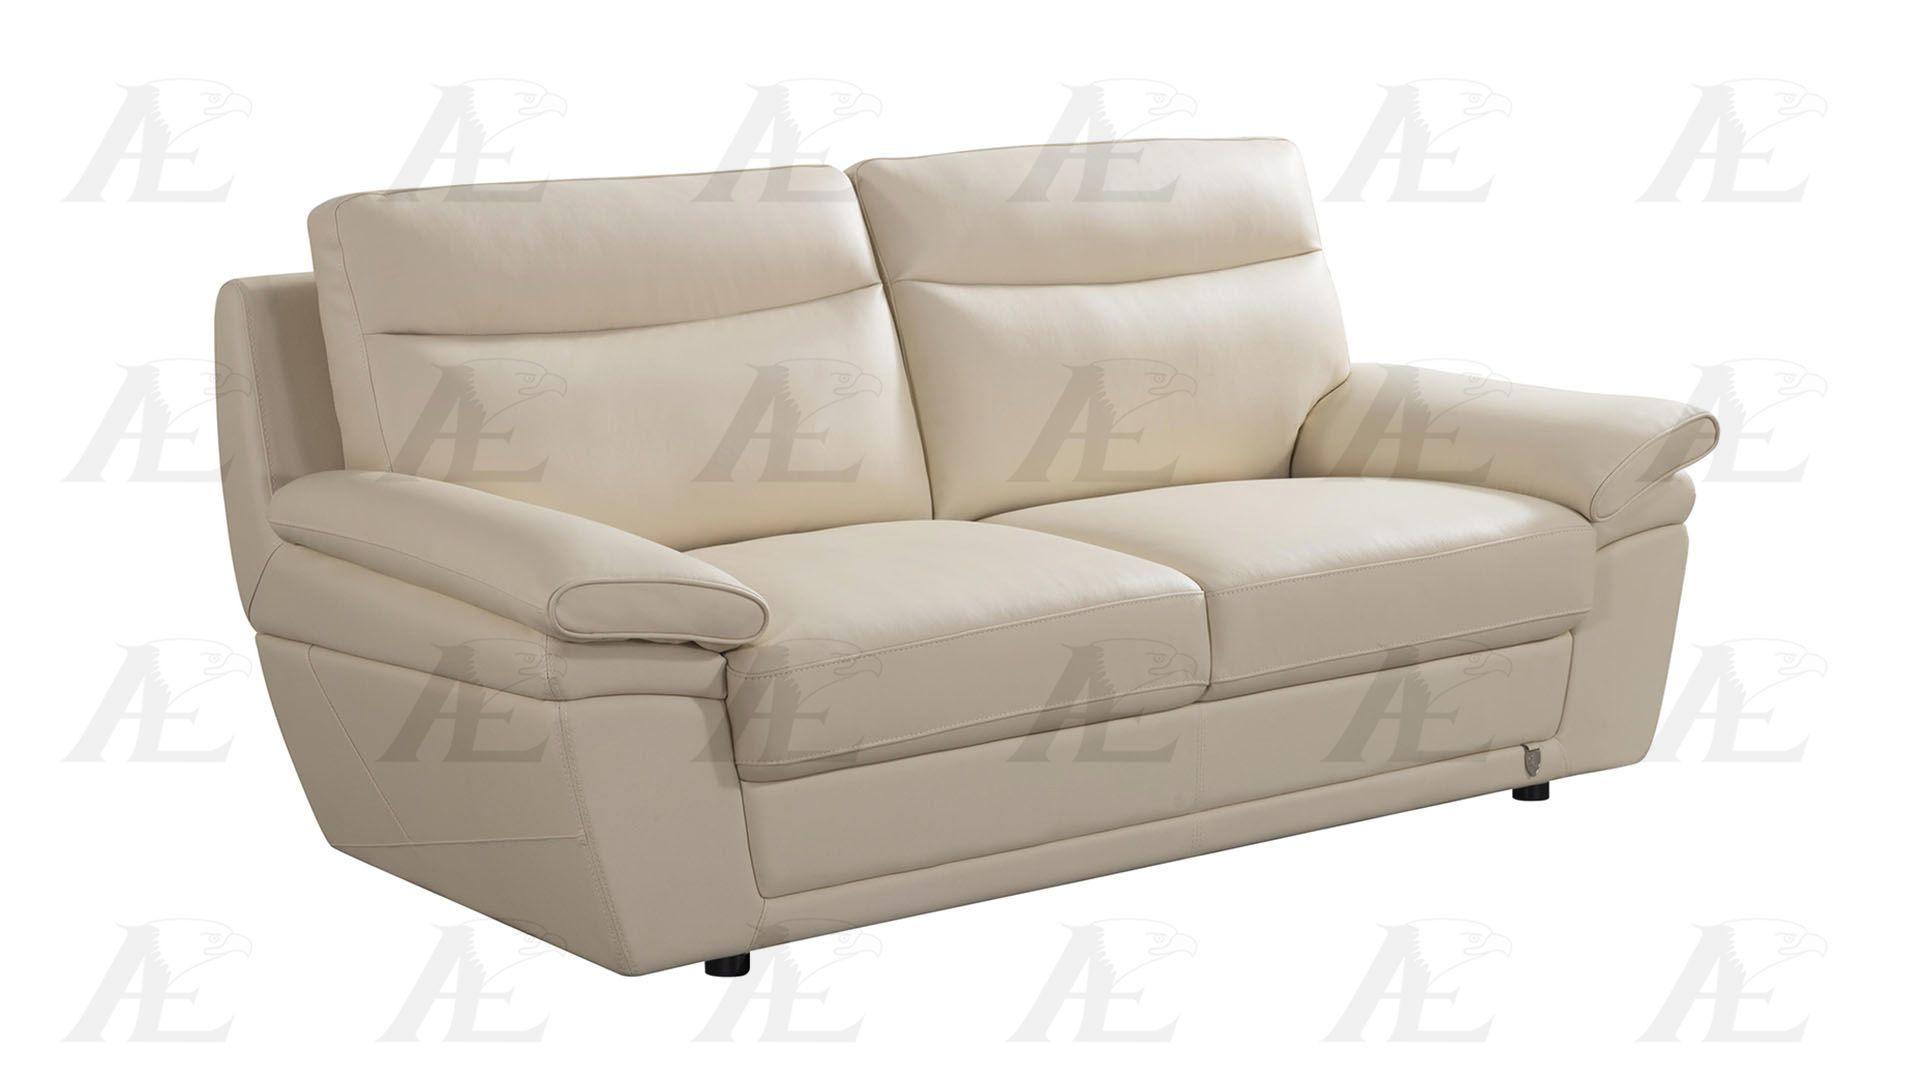 

    
EK092-CRM Sofa Set
